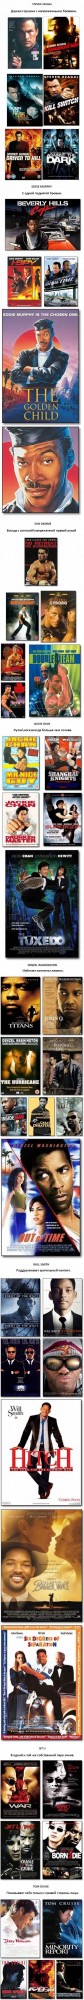 Четыре типа постеров к голливудским фильмам